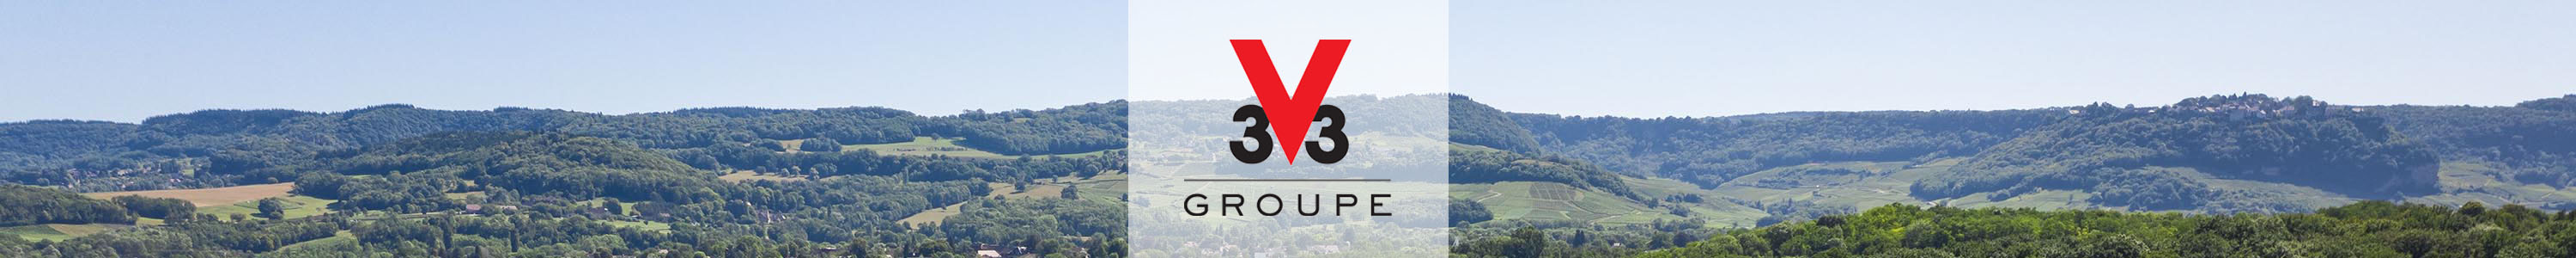 V33 Group